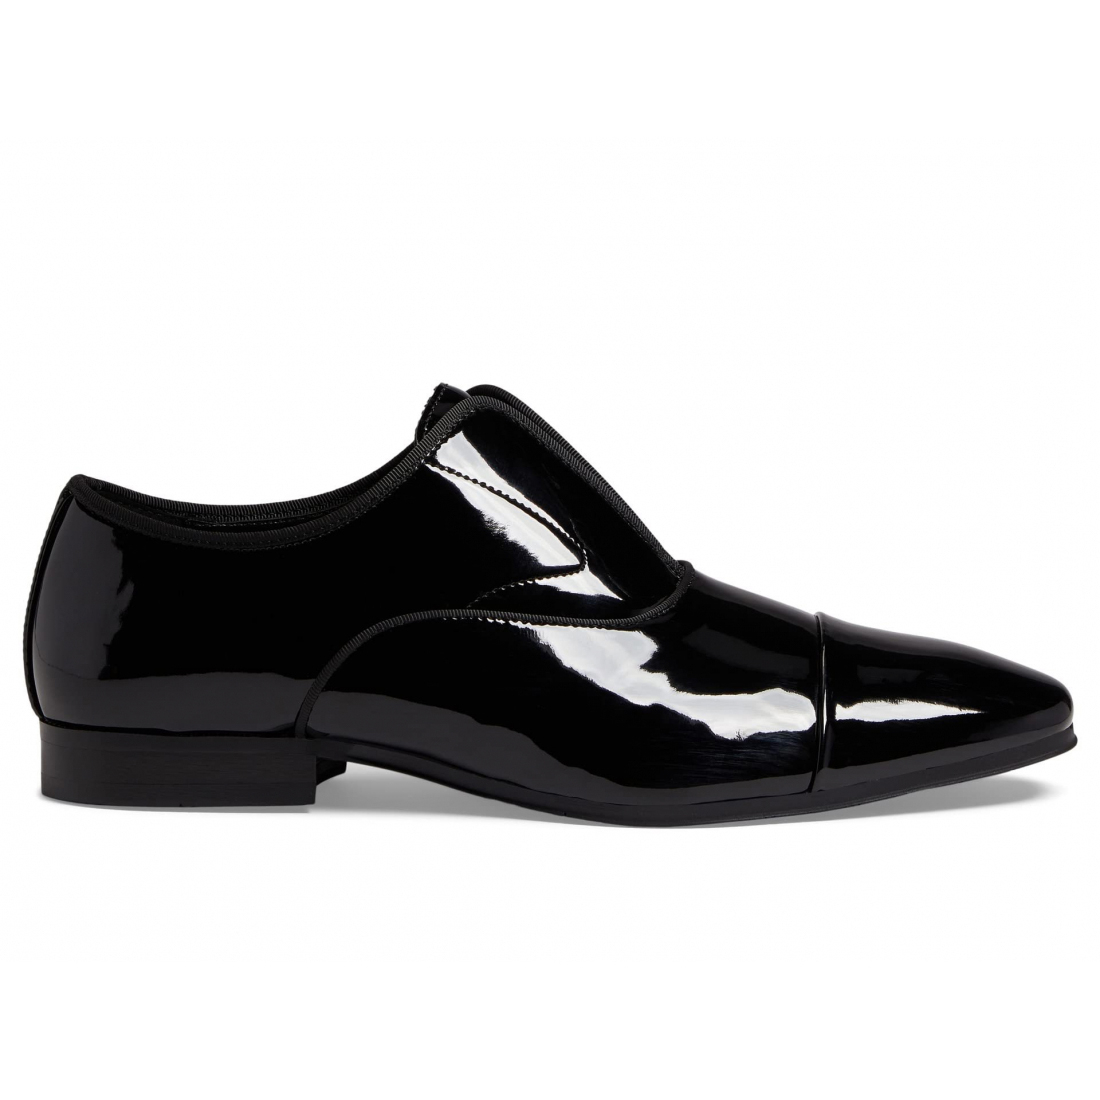 'Bolivar' Monk Schuhe für Herren